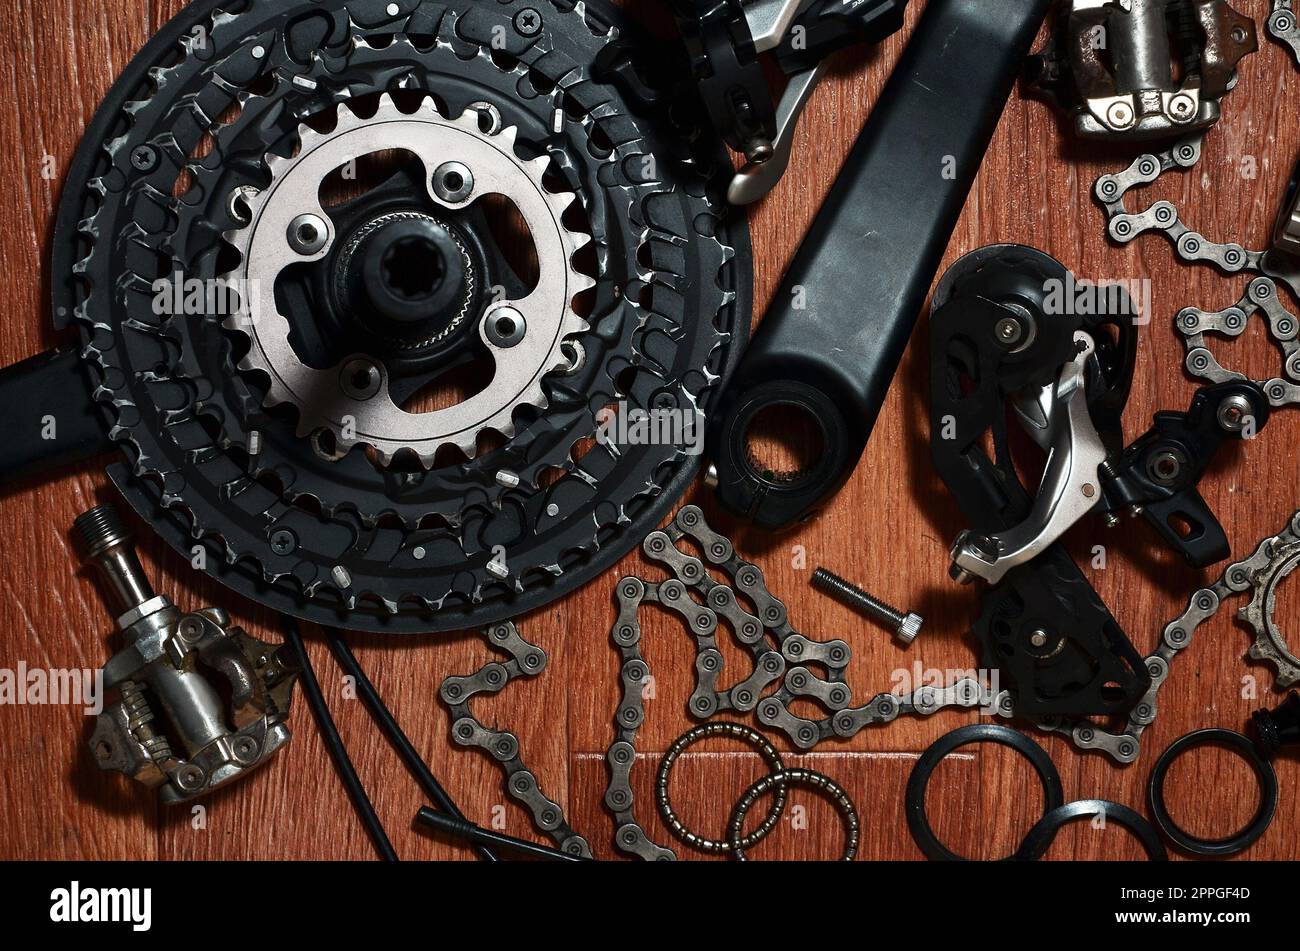 Molte diverse parti metalliche e componenti dell'equipaggiamento da running di una moto sportiva Foto Stock